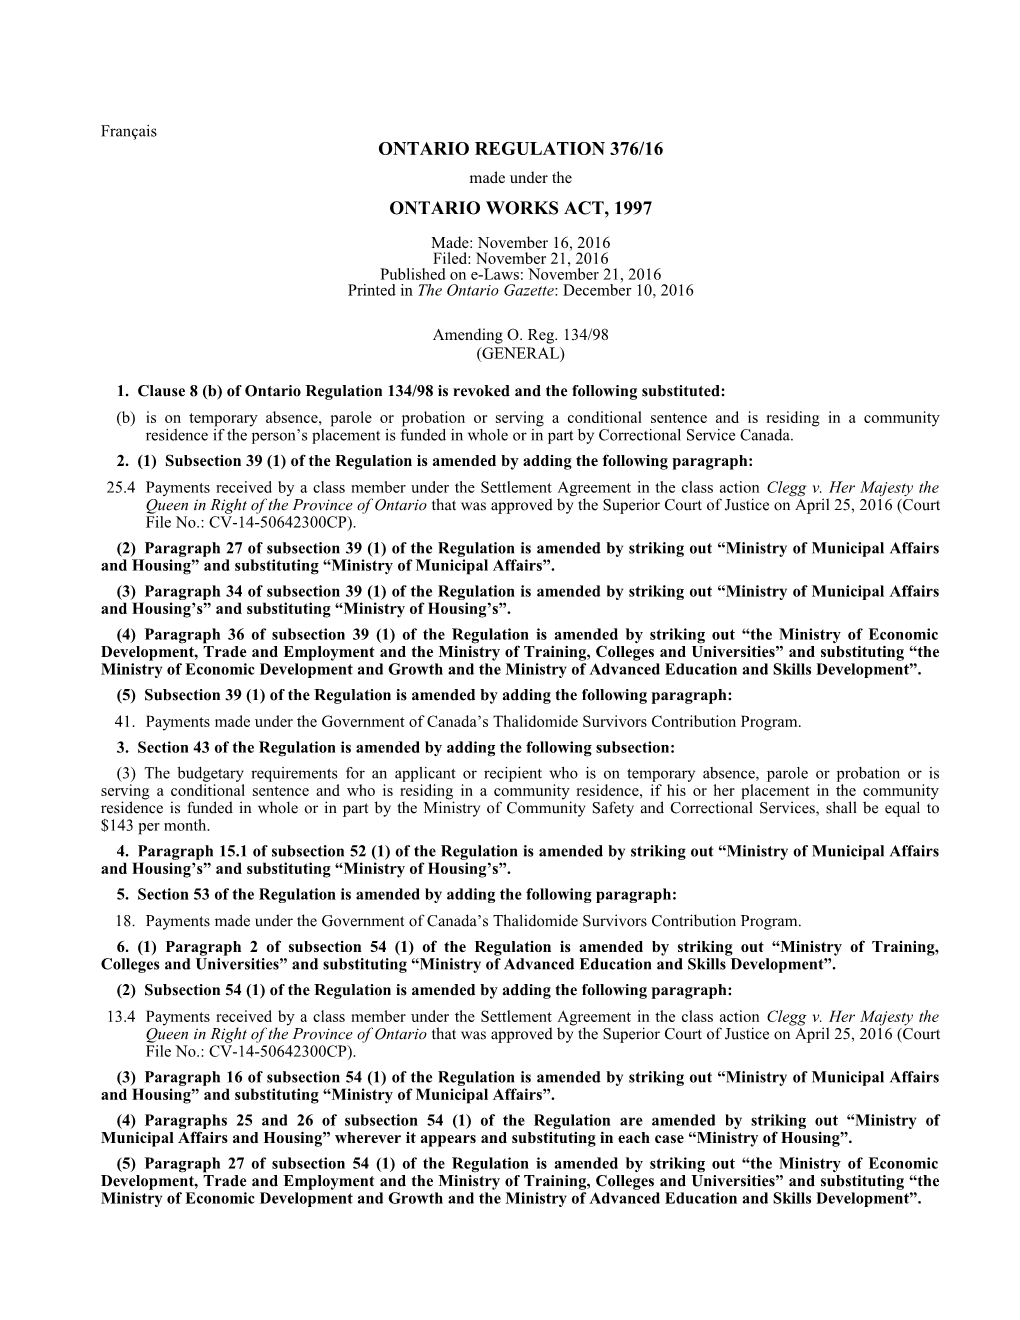 ONTARIO WORKS ACT, 1997 - O. Reg. 376/16